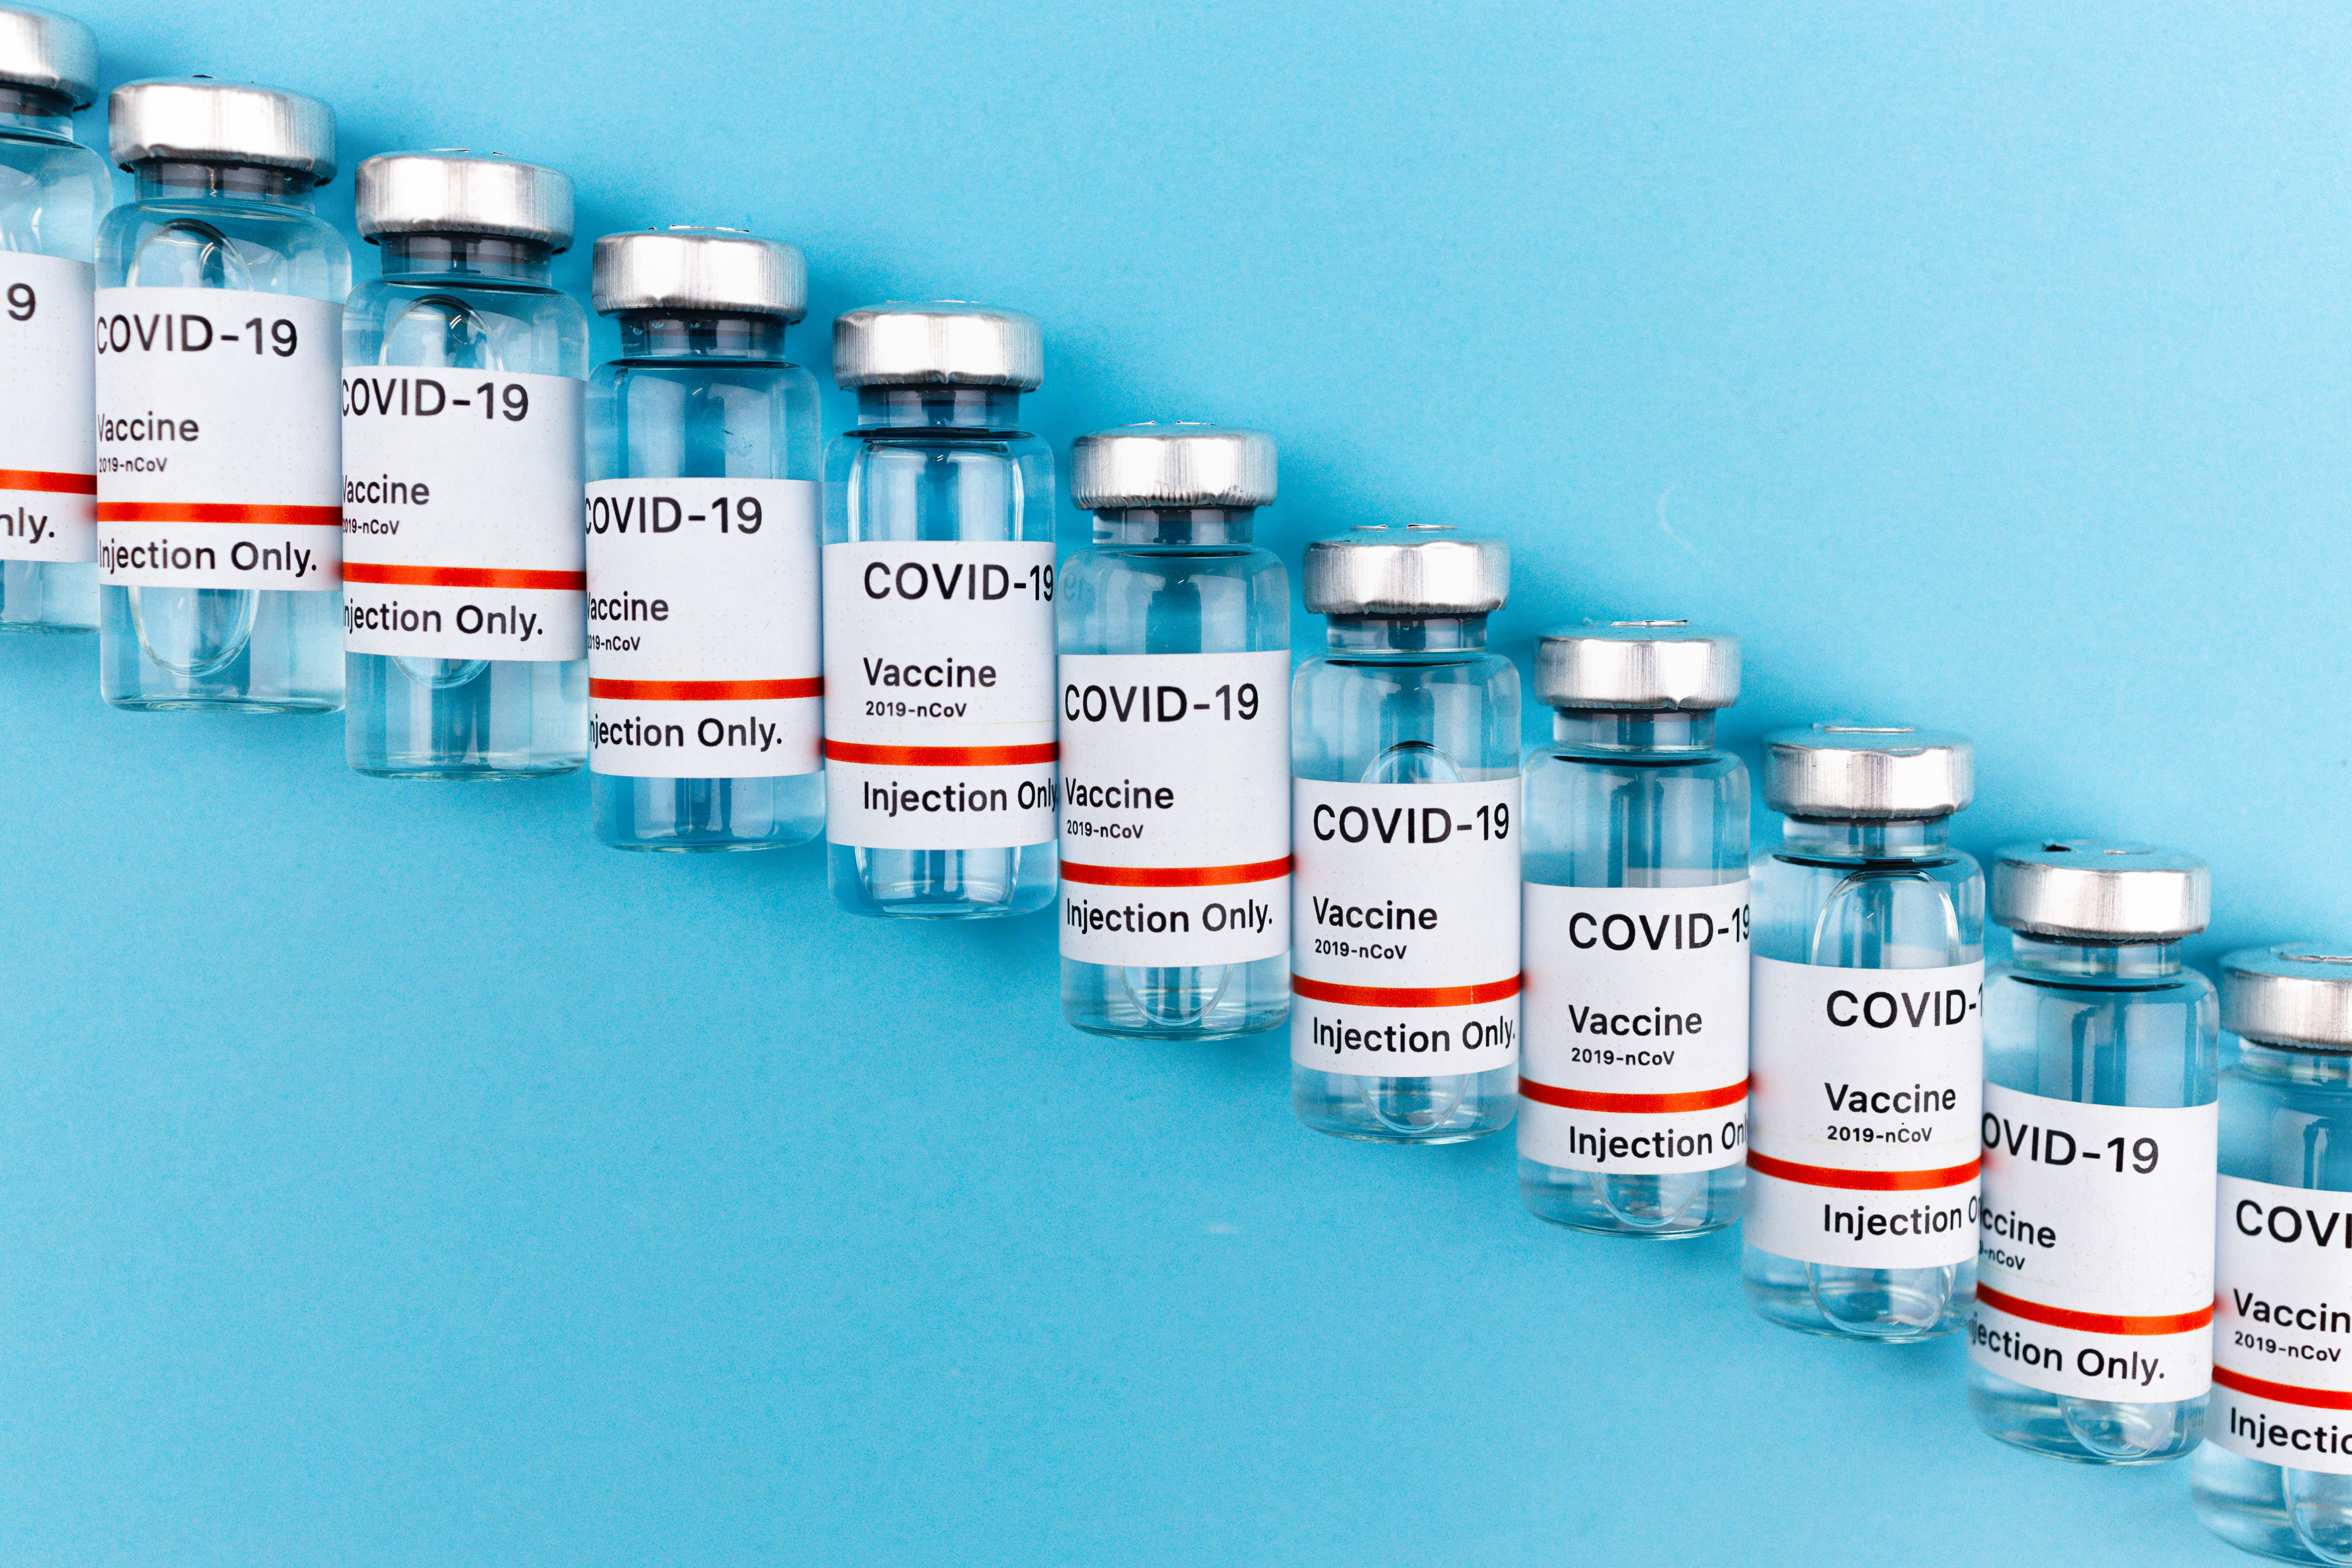 2 million covid vaccination doses